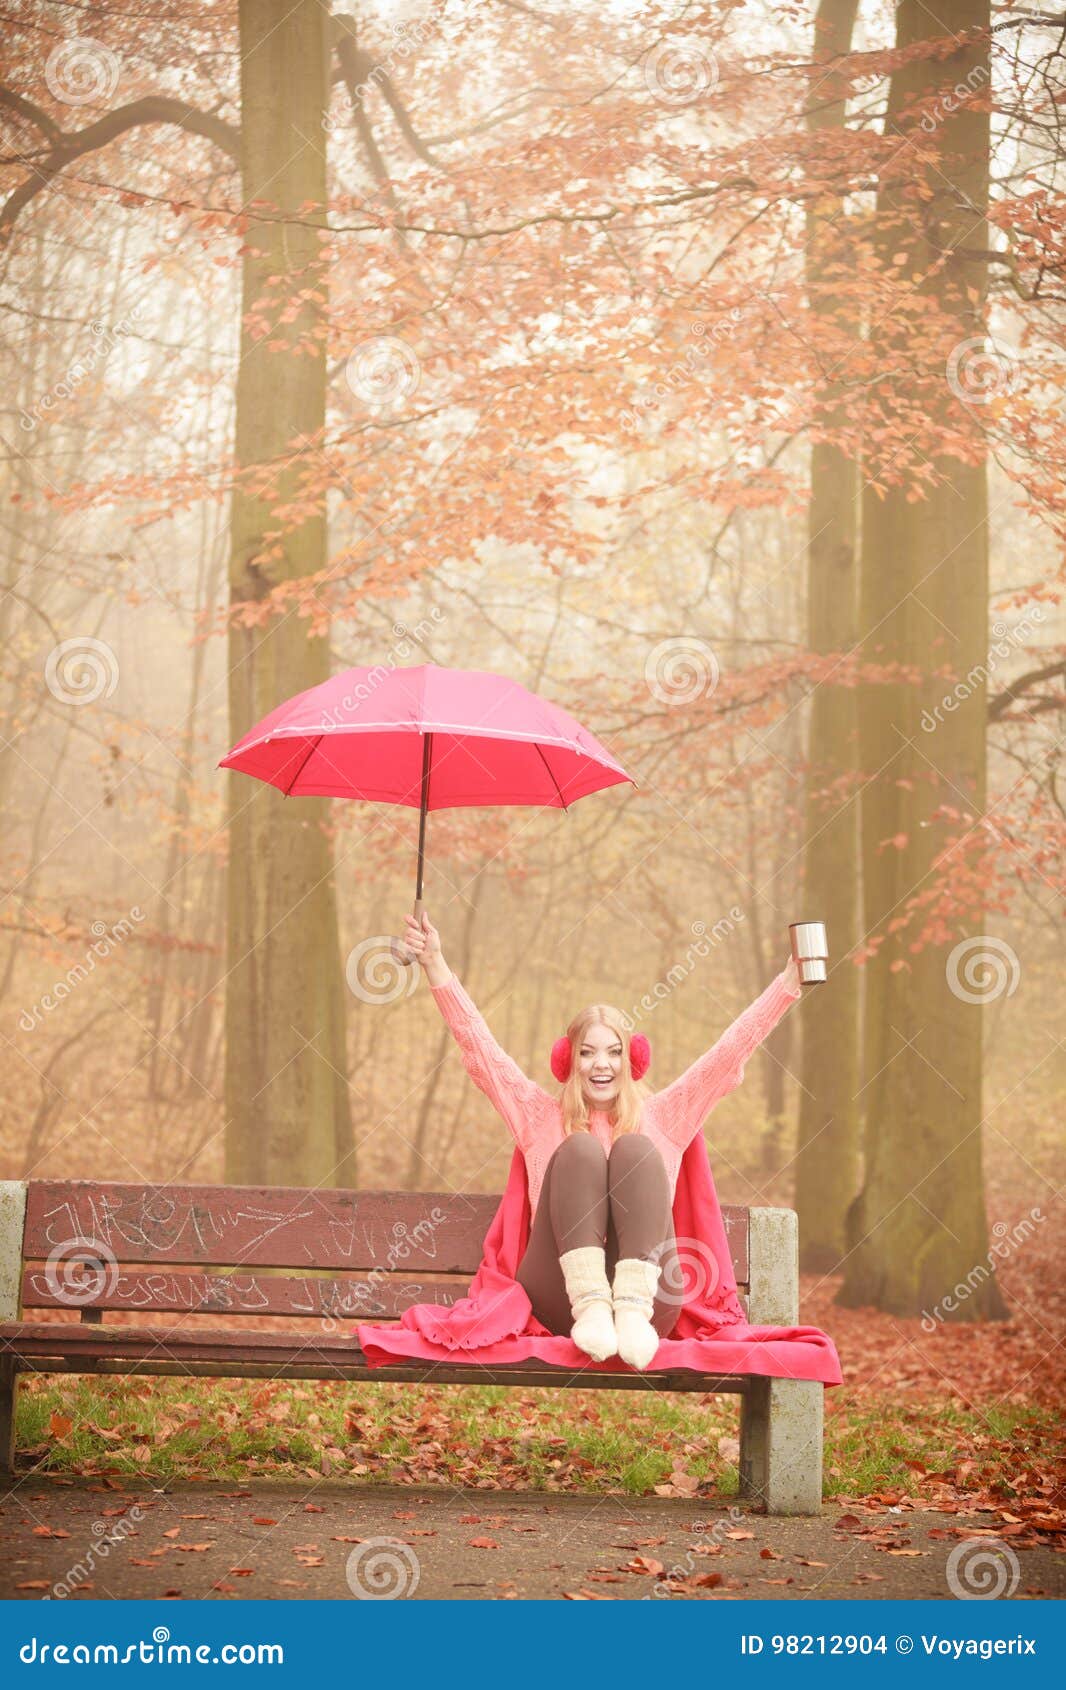 Зонтик сидит. Сидит с зонтиком. Девочка с зонтиком сидит. Сидит с зонтом. Картинка девушка с зонтом сидит.